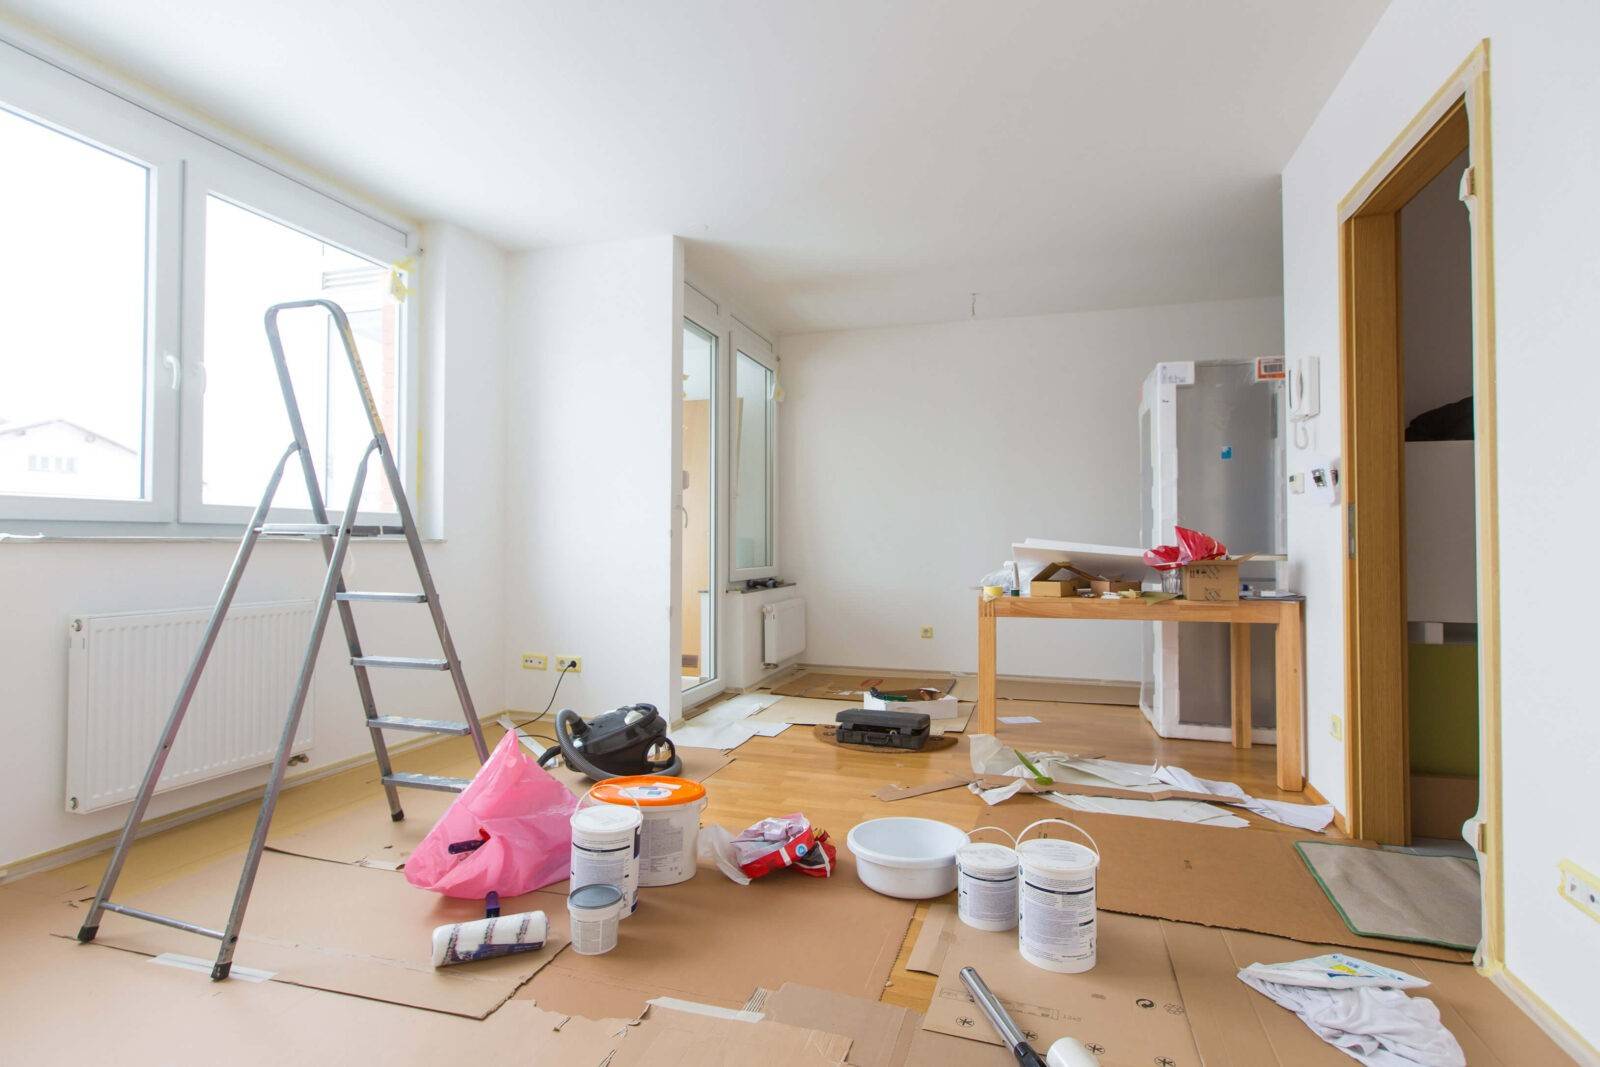 Как сэкономить на ремонте квартиры (90+ фото, обучающее видео): практические советы